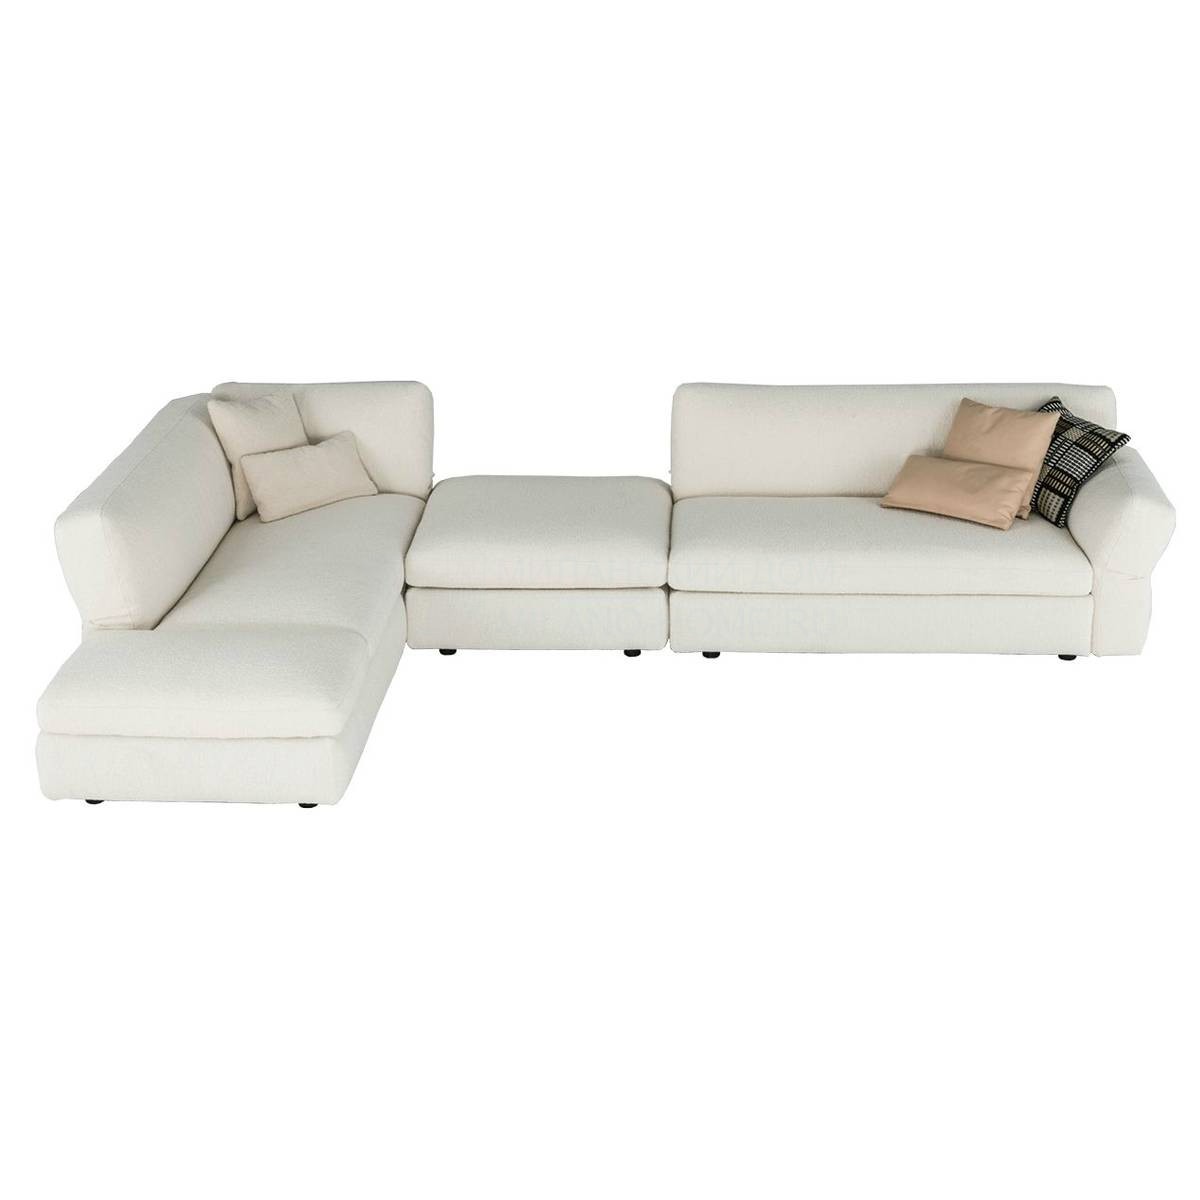 Угловой диван Neil sofa из Италии фабрики DRIADE